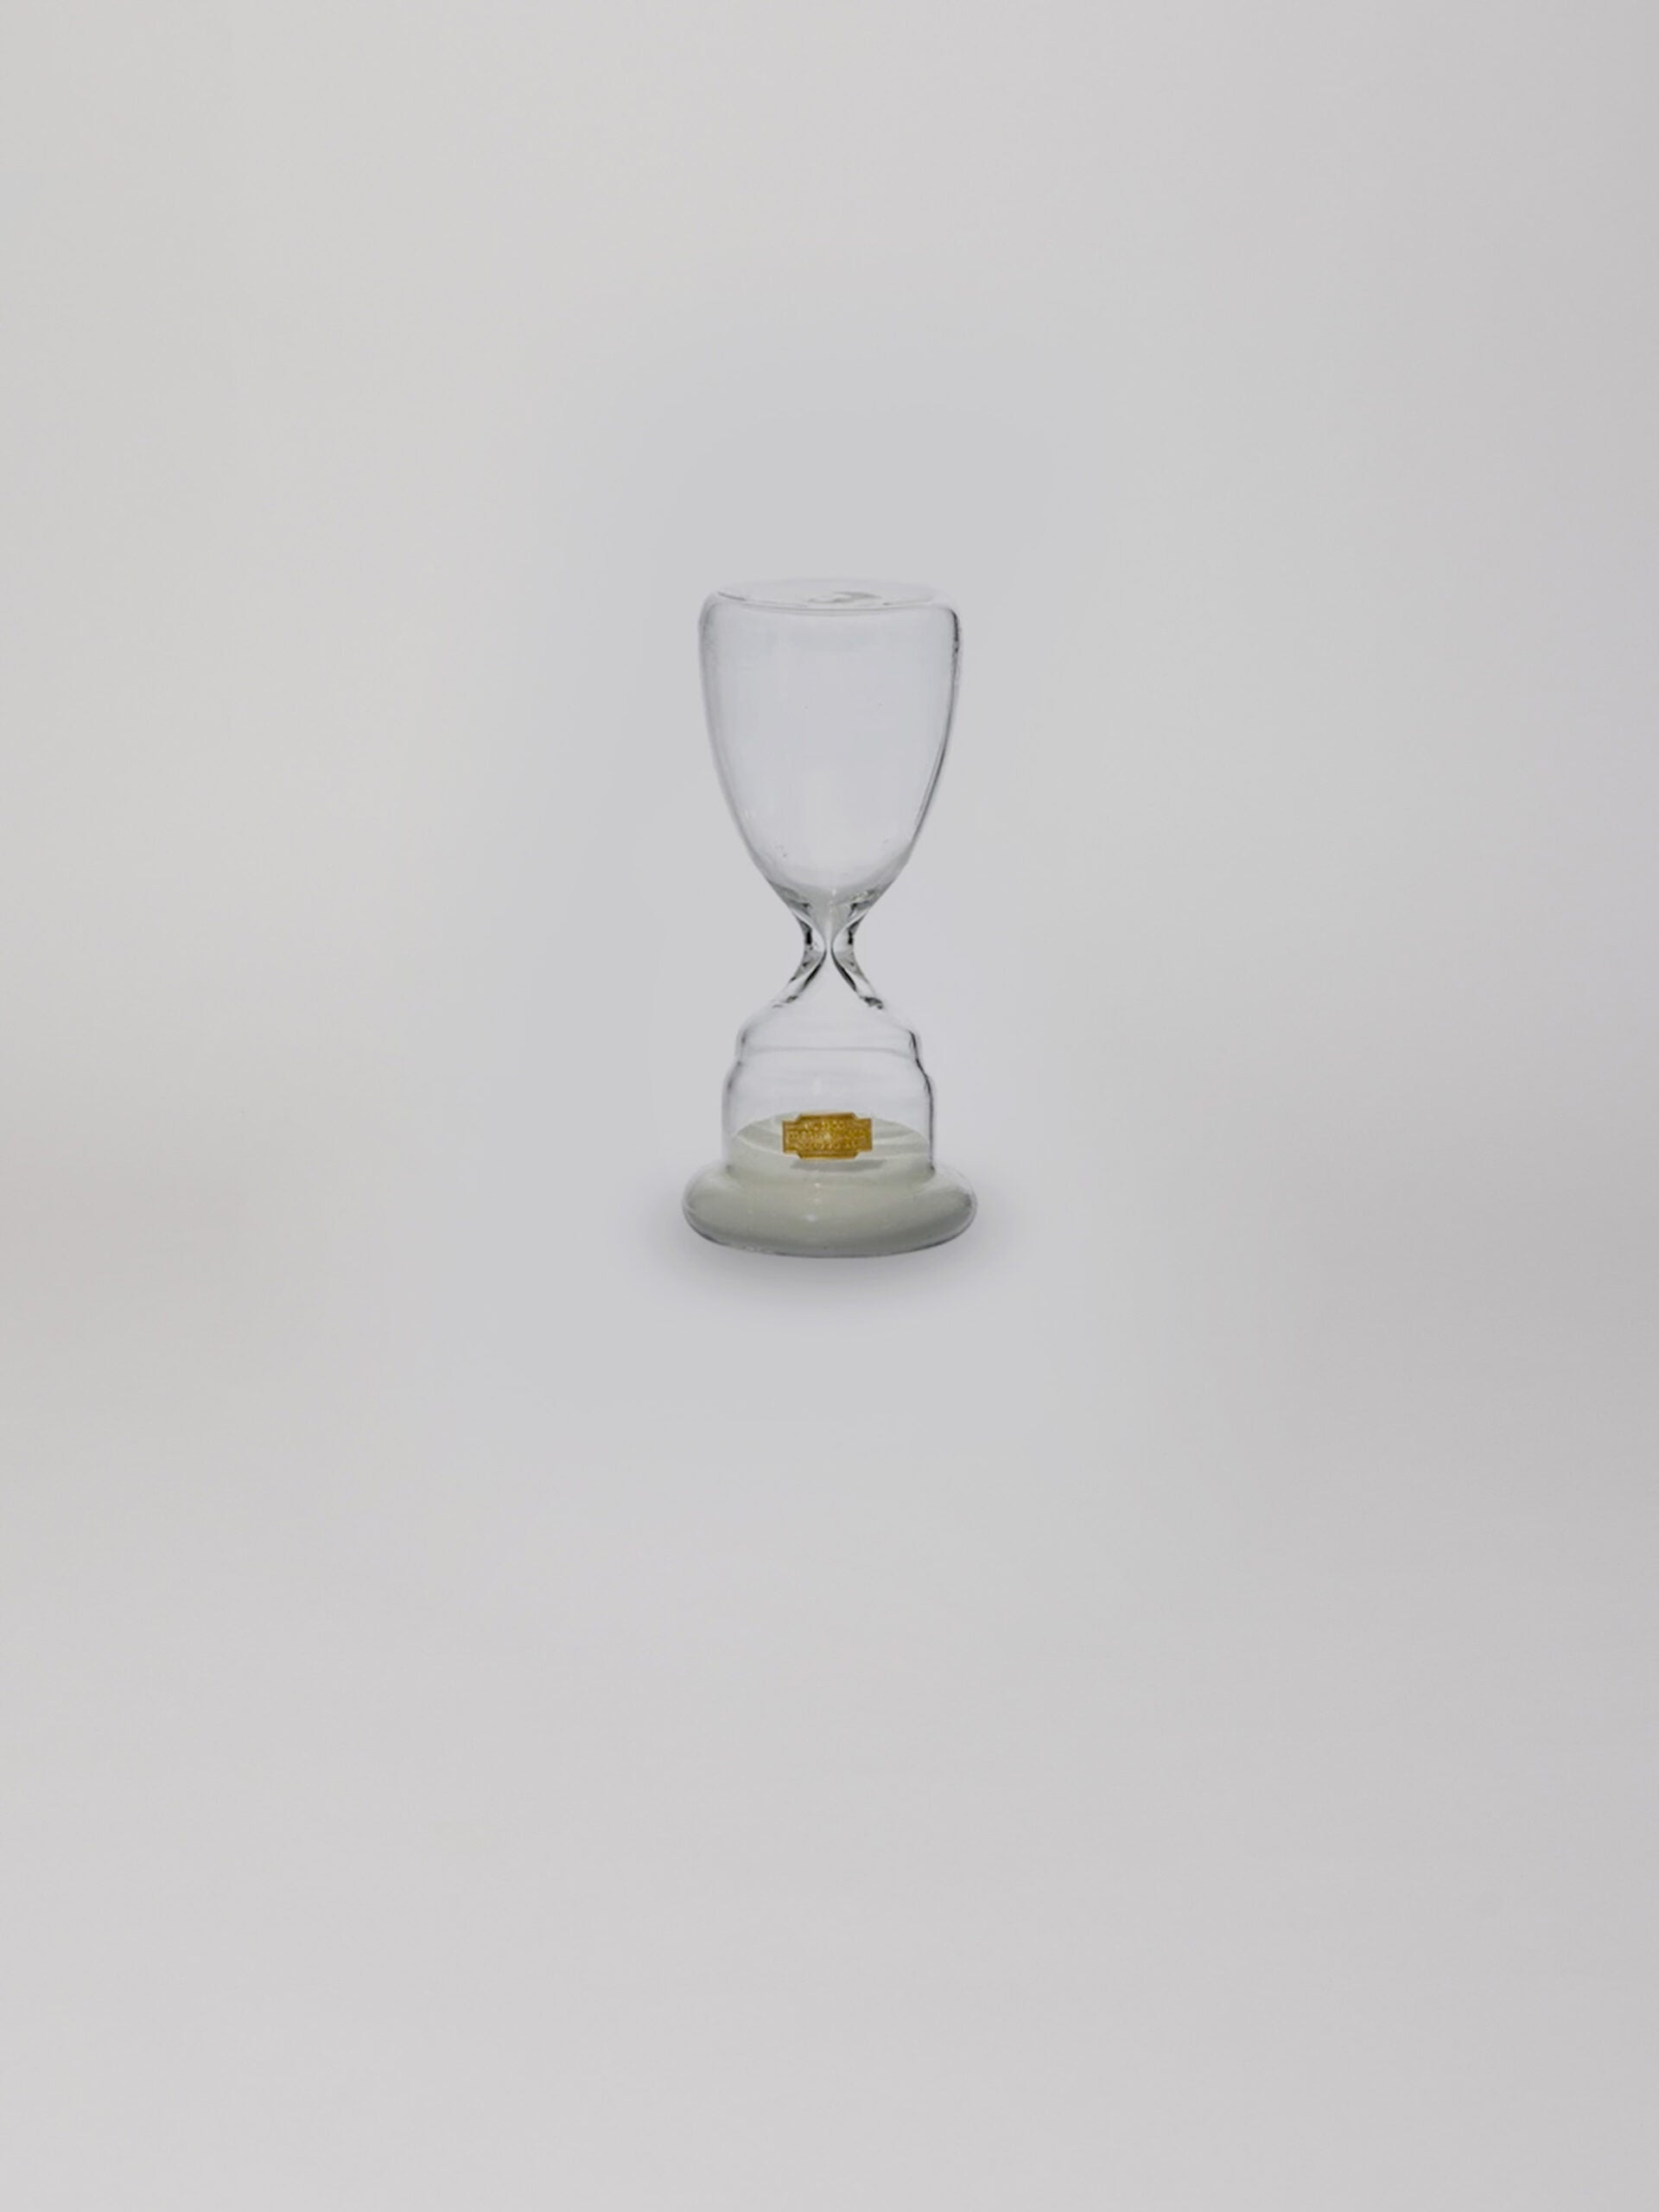 שעון חול מזכוכית בצבע לבן עם חול בחלקו התחתון על עומד על רקע אפור בהיר